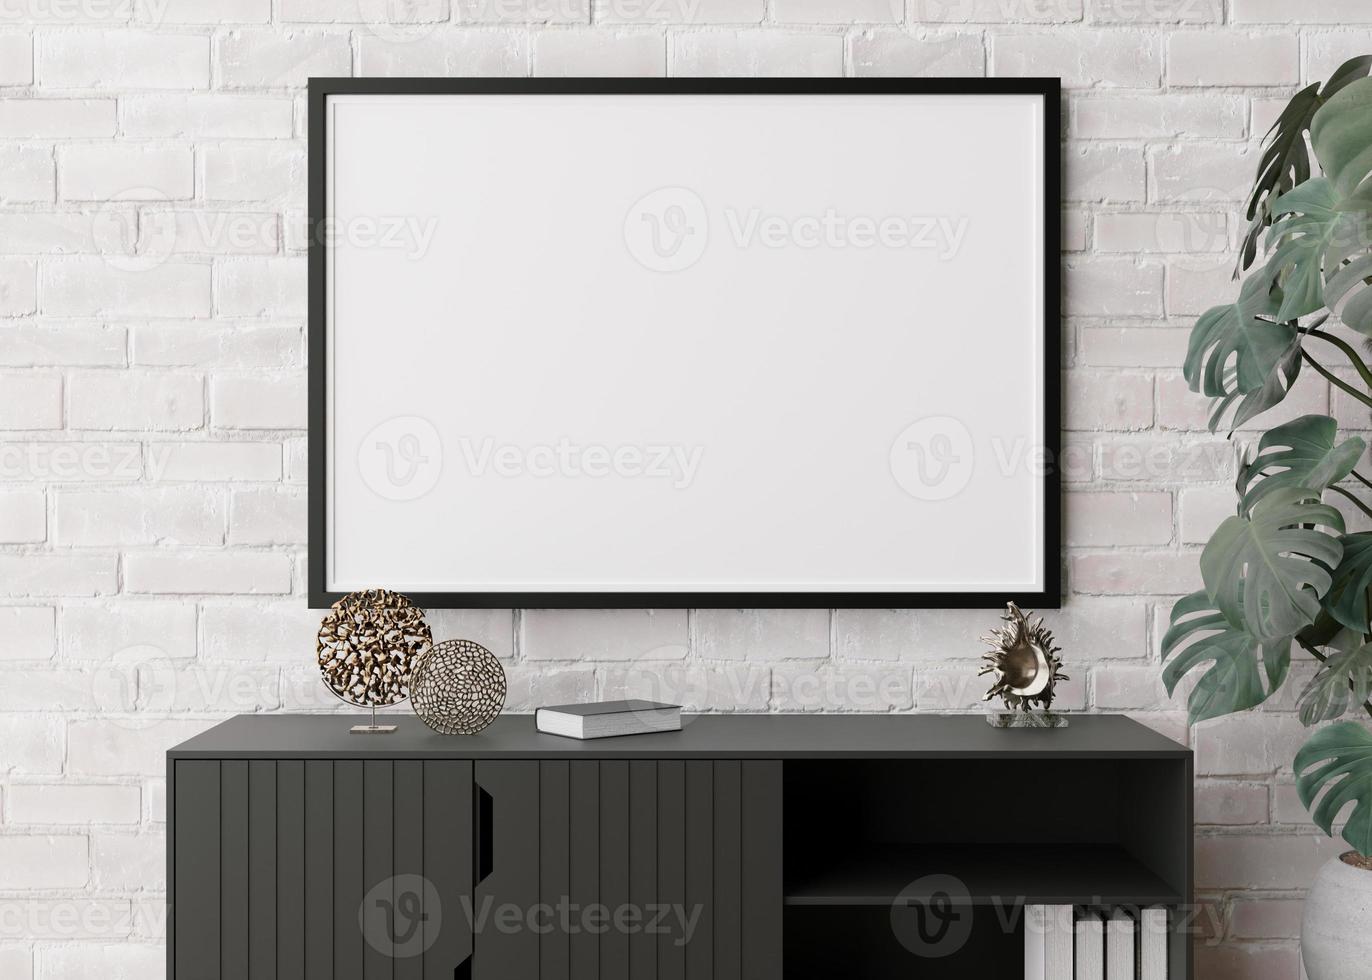 marco de imagen horizontal vacío en la pared de ladrillo blanco en la sala de estar moderna. interior simulado en estilo minimalista y escandinavo. gratis, copie el espacio para la imagen, el póster. consola, esculturas. representación 3d foto